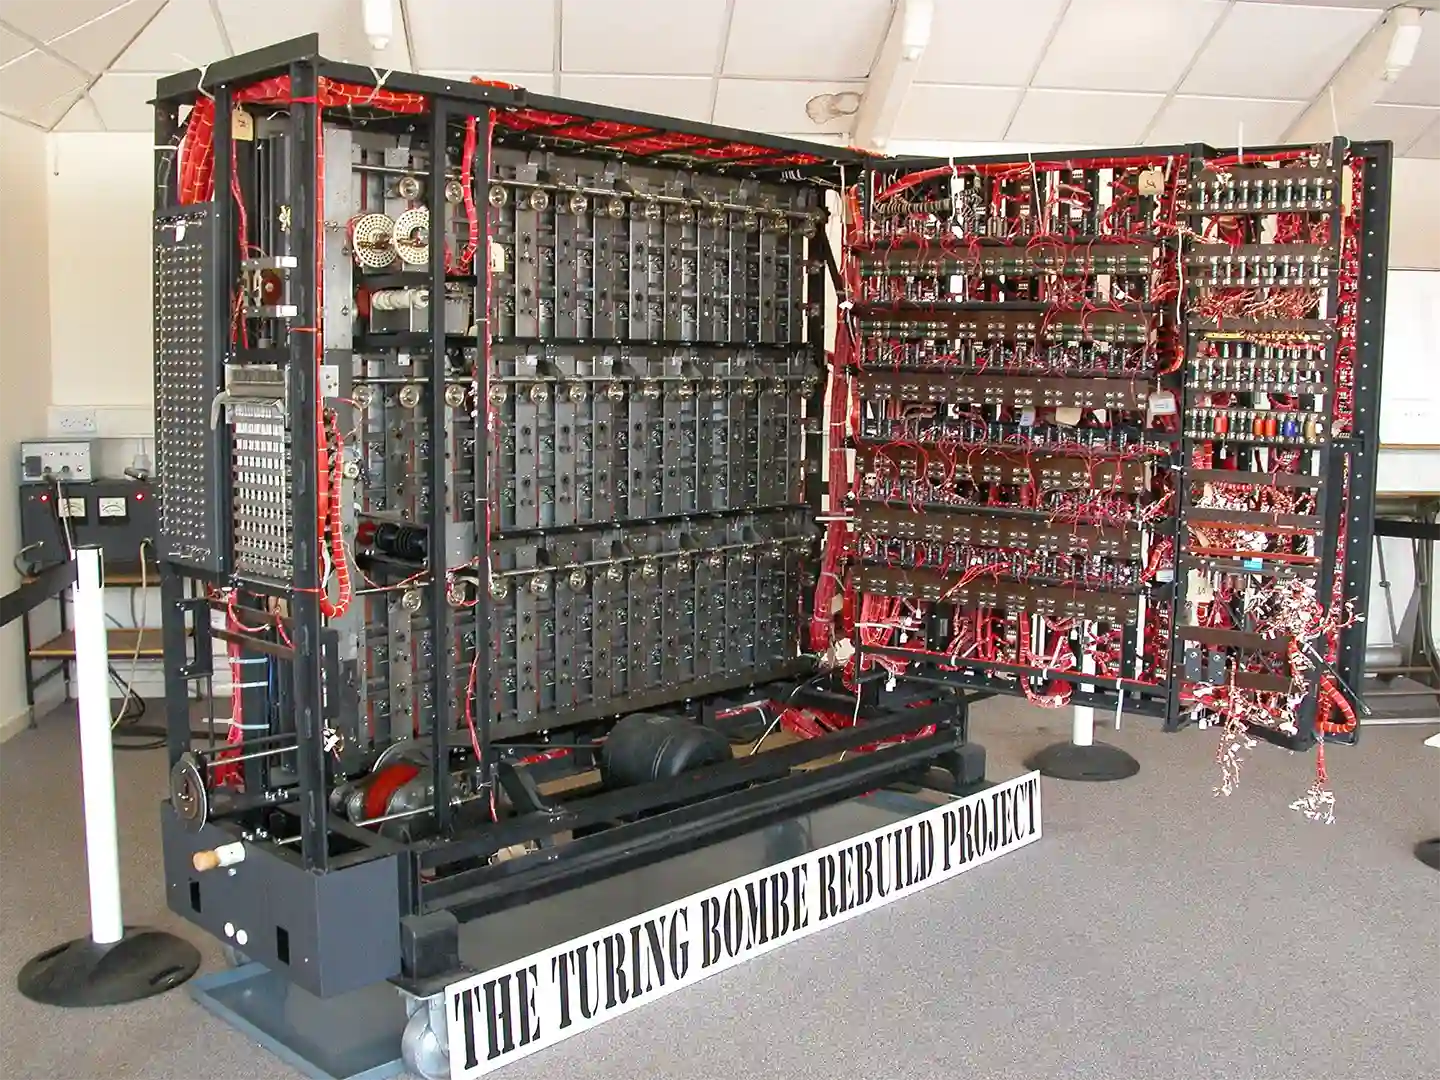 La bomba creada por Turing para lograr descifrar la máquina de Enigma